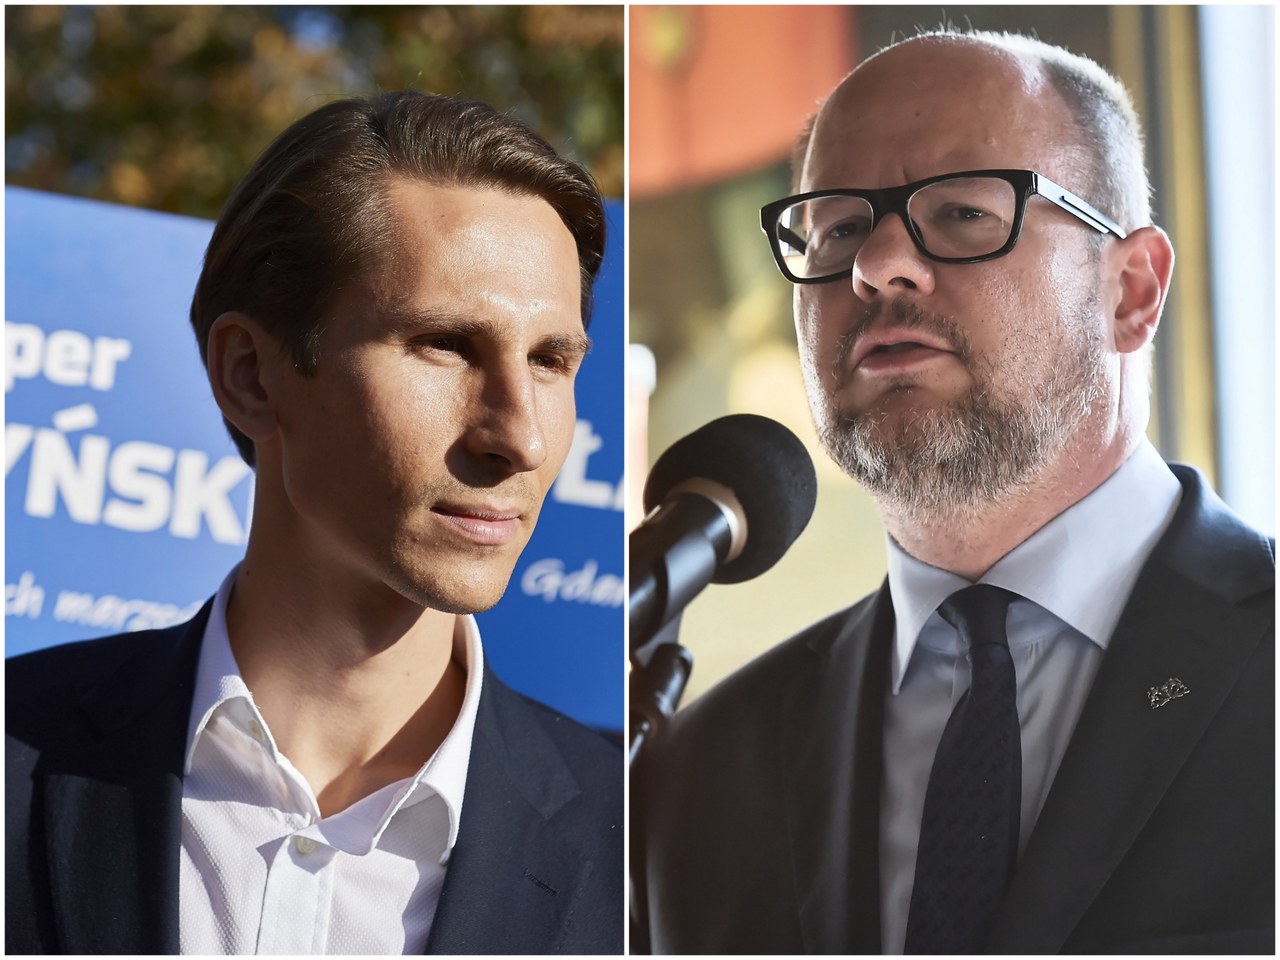 Wybory samorządowe: Paweł Adamowicz i Kacper Płażyński zmierzą się w Gdańsku w drugiej turze!